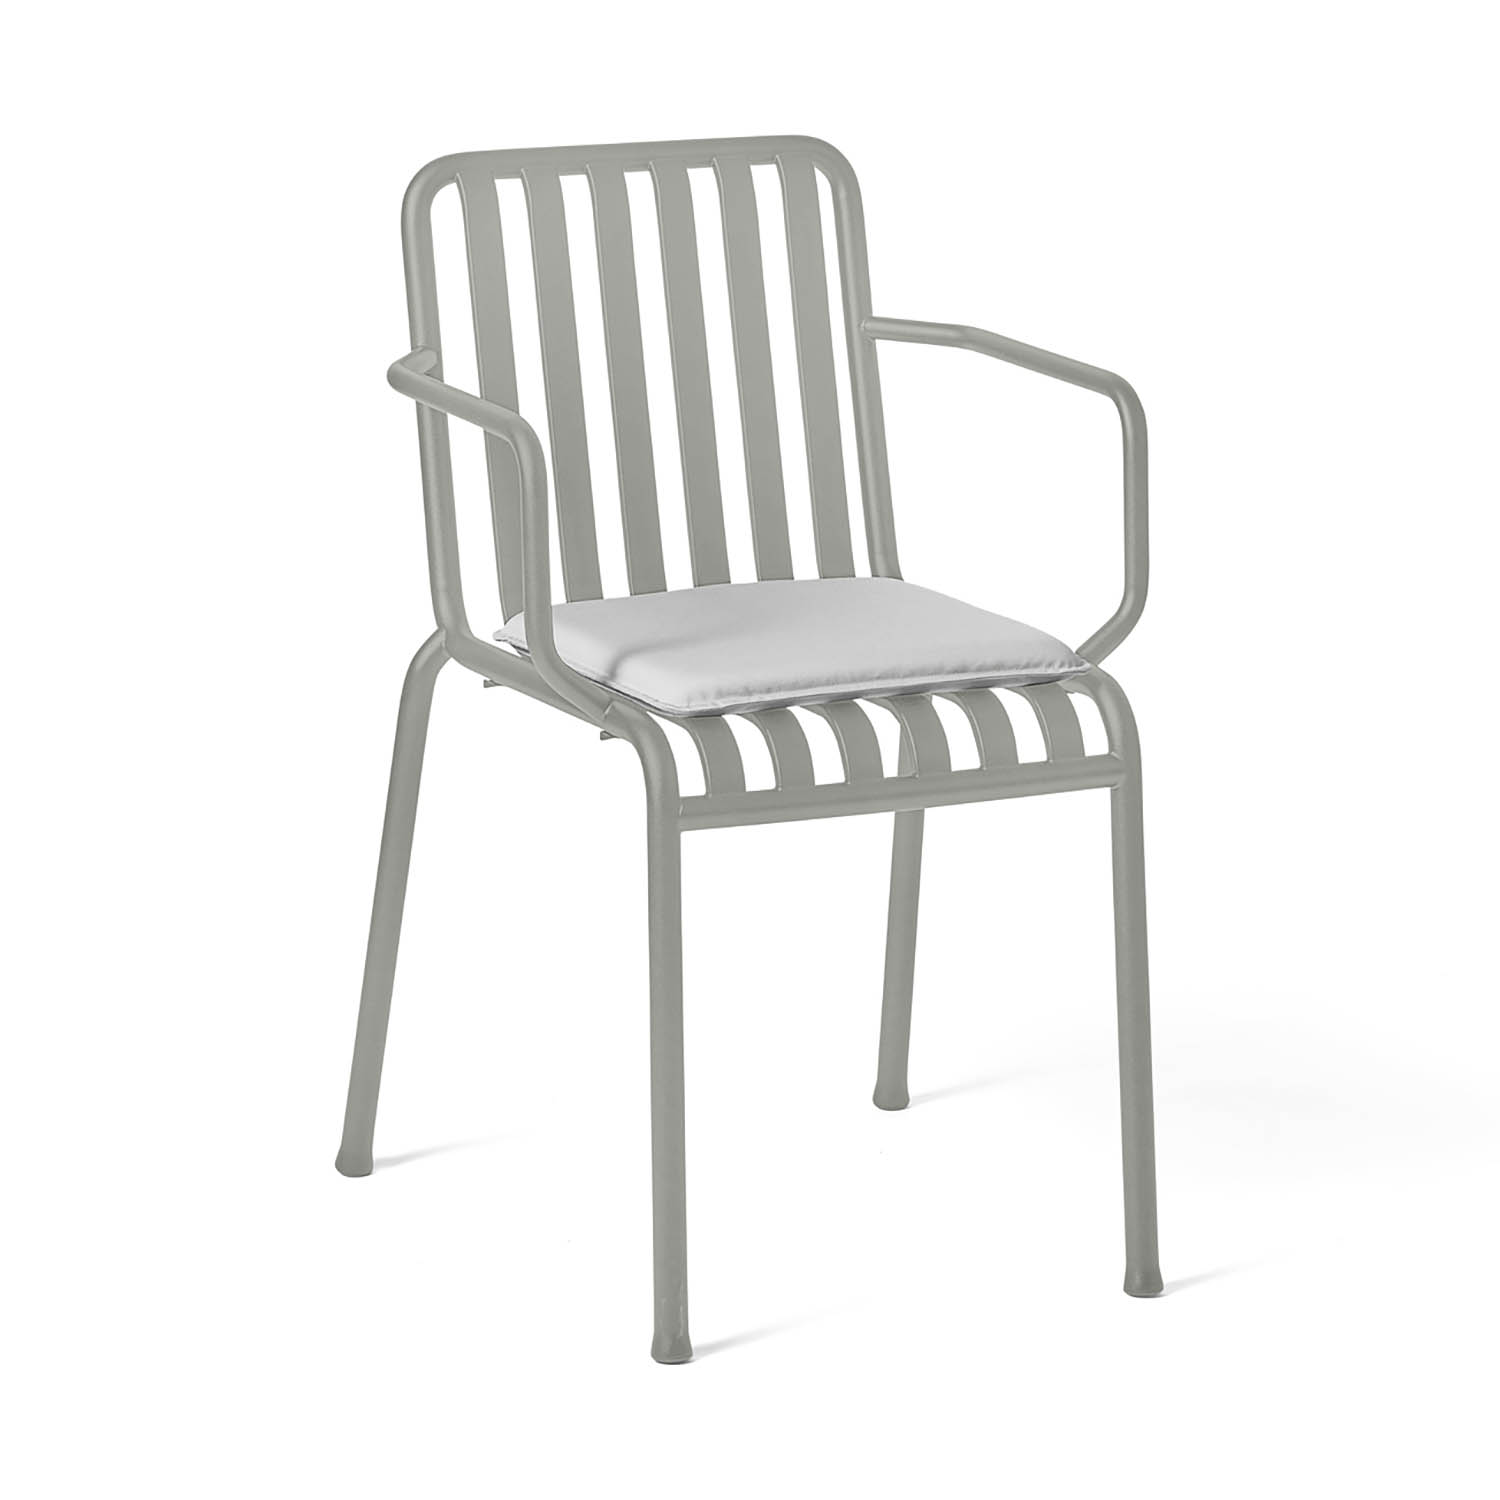 Palissade sittdyna 37x37 cm till stol ljusgrå